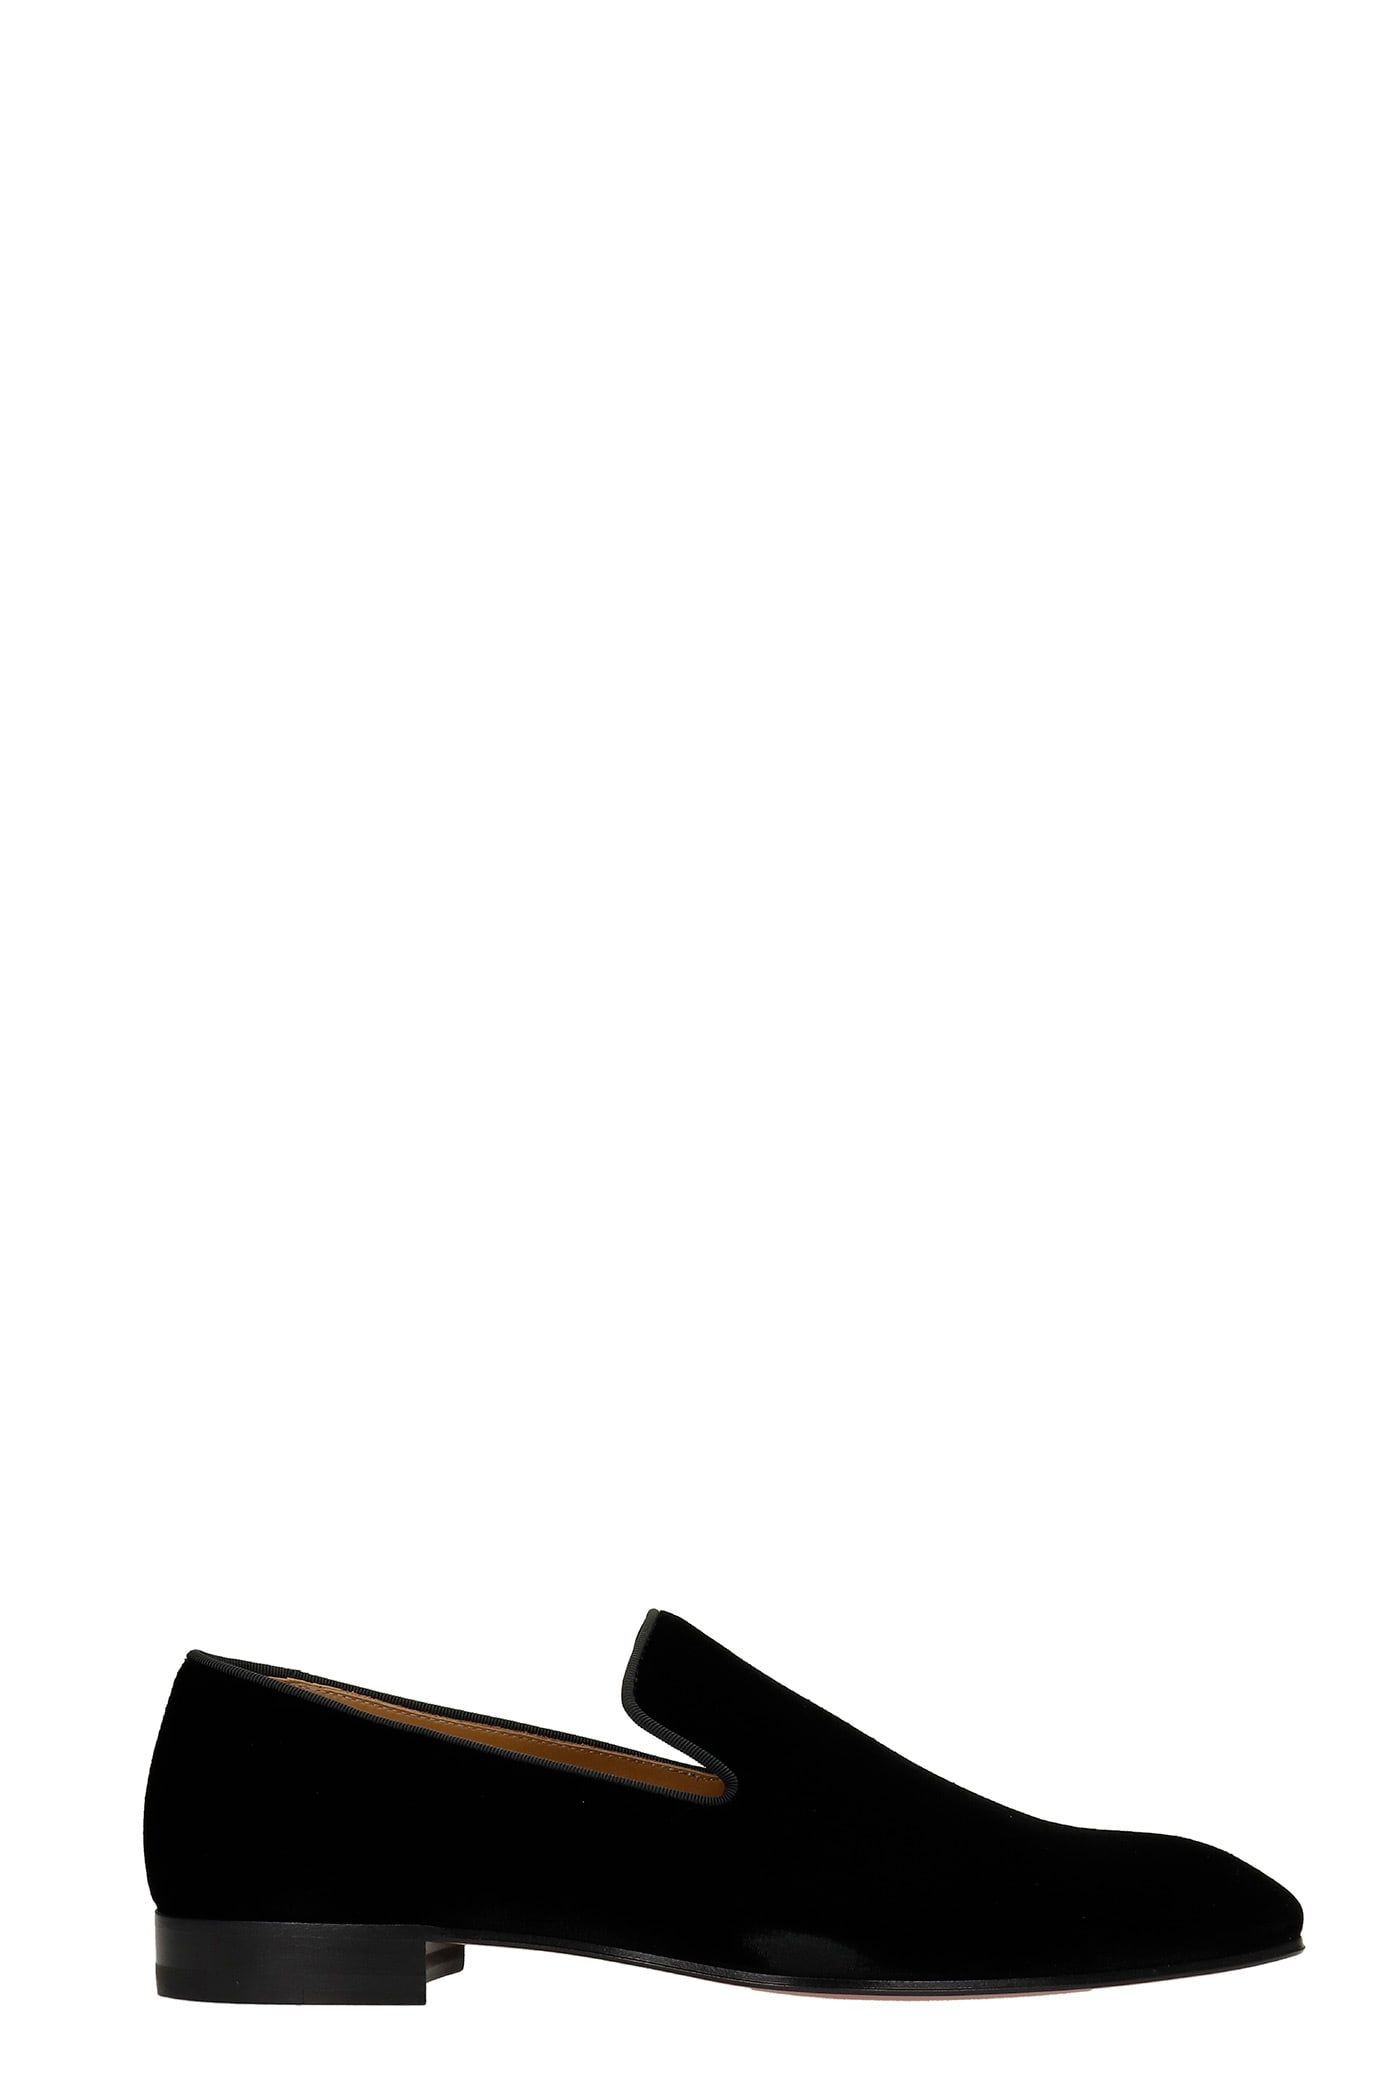 Christian Louboutin Dandelion Loafers In Black Velvet